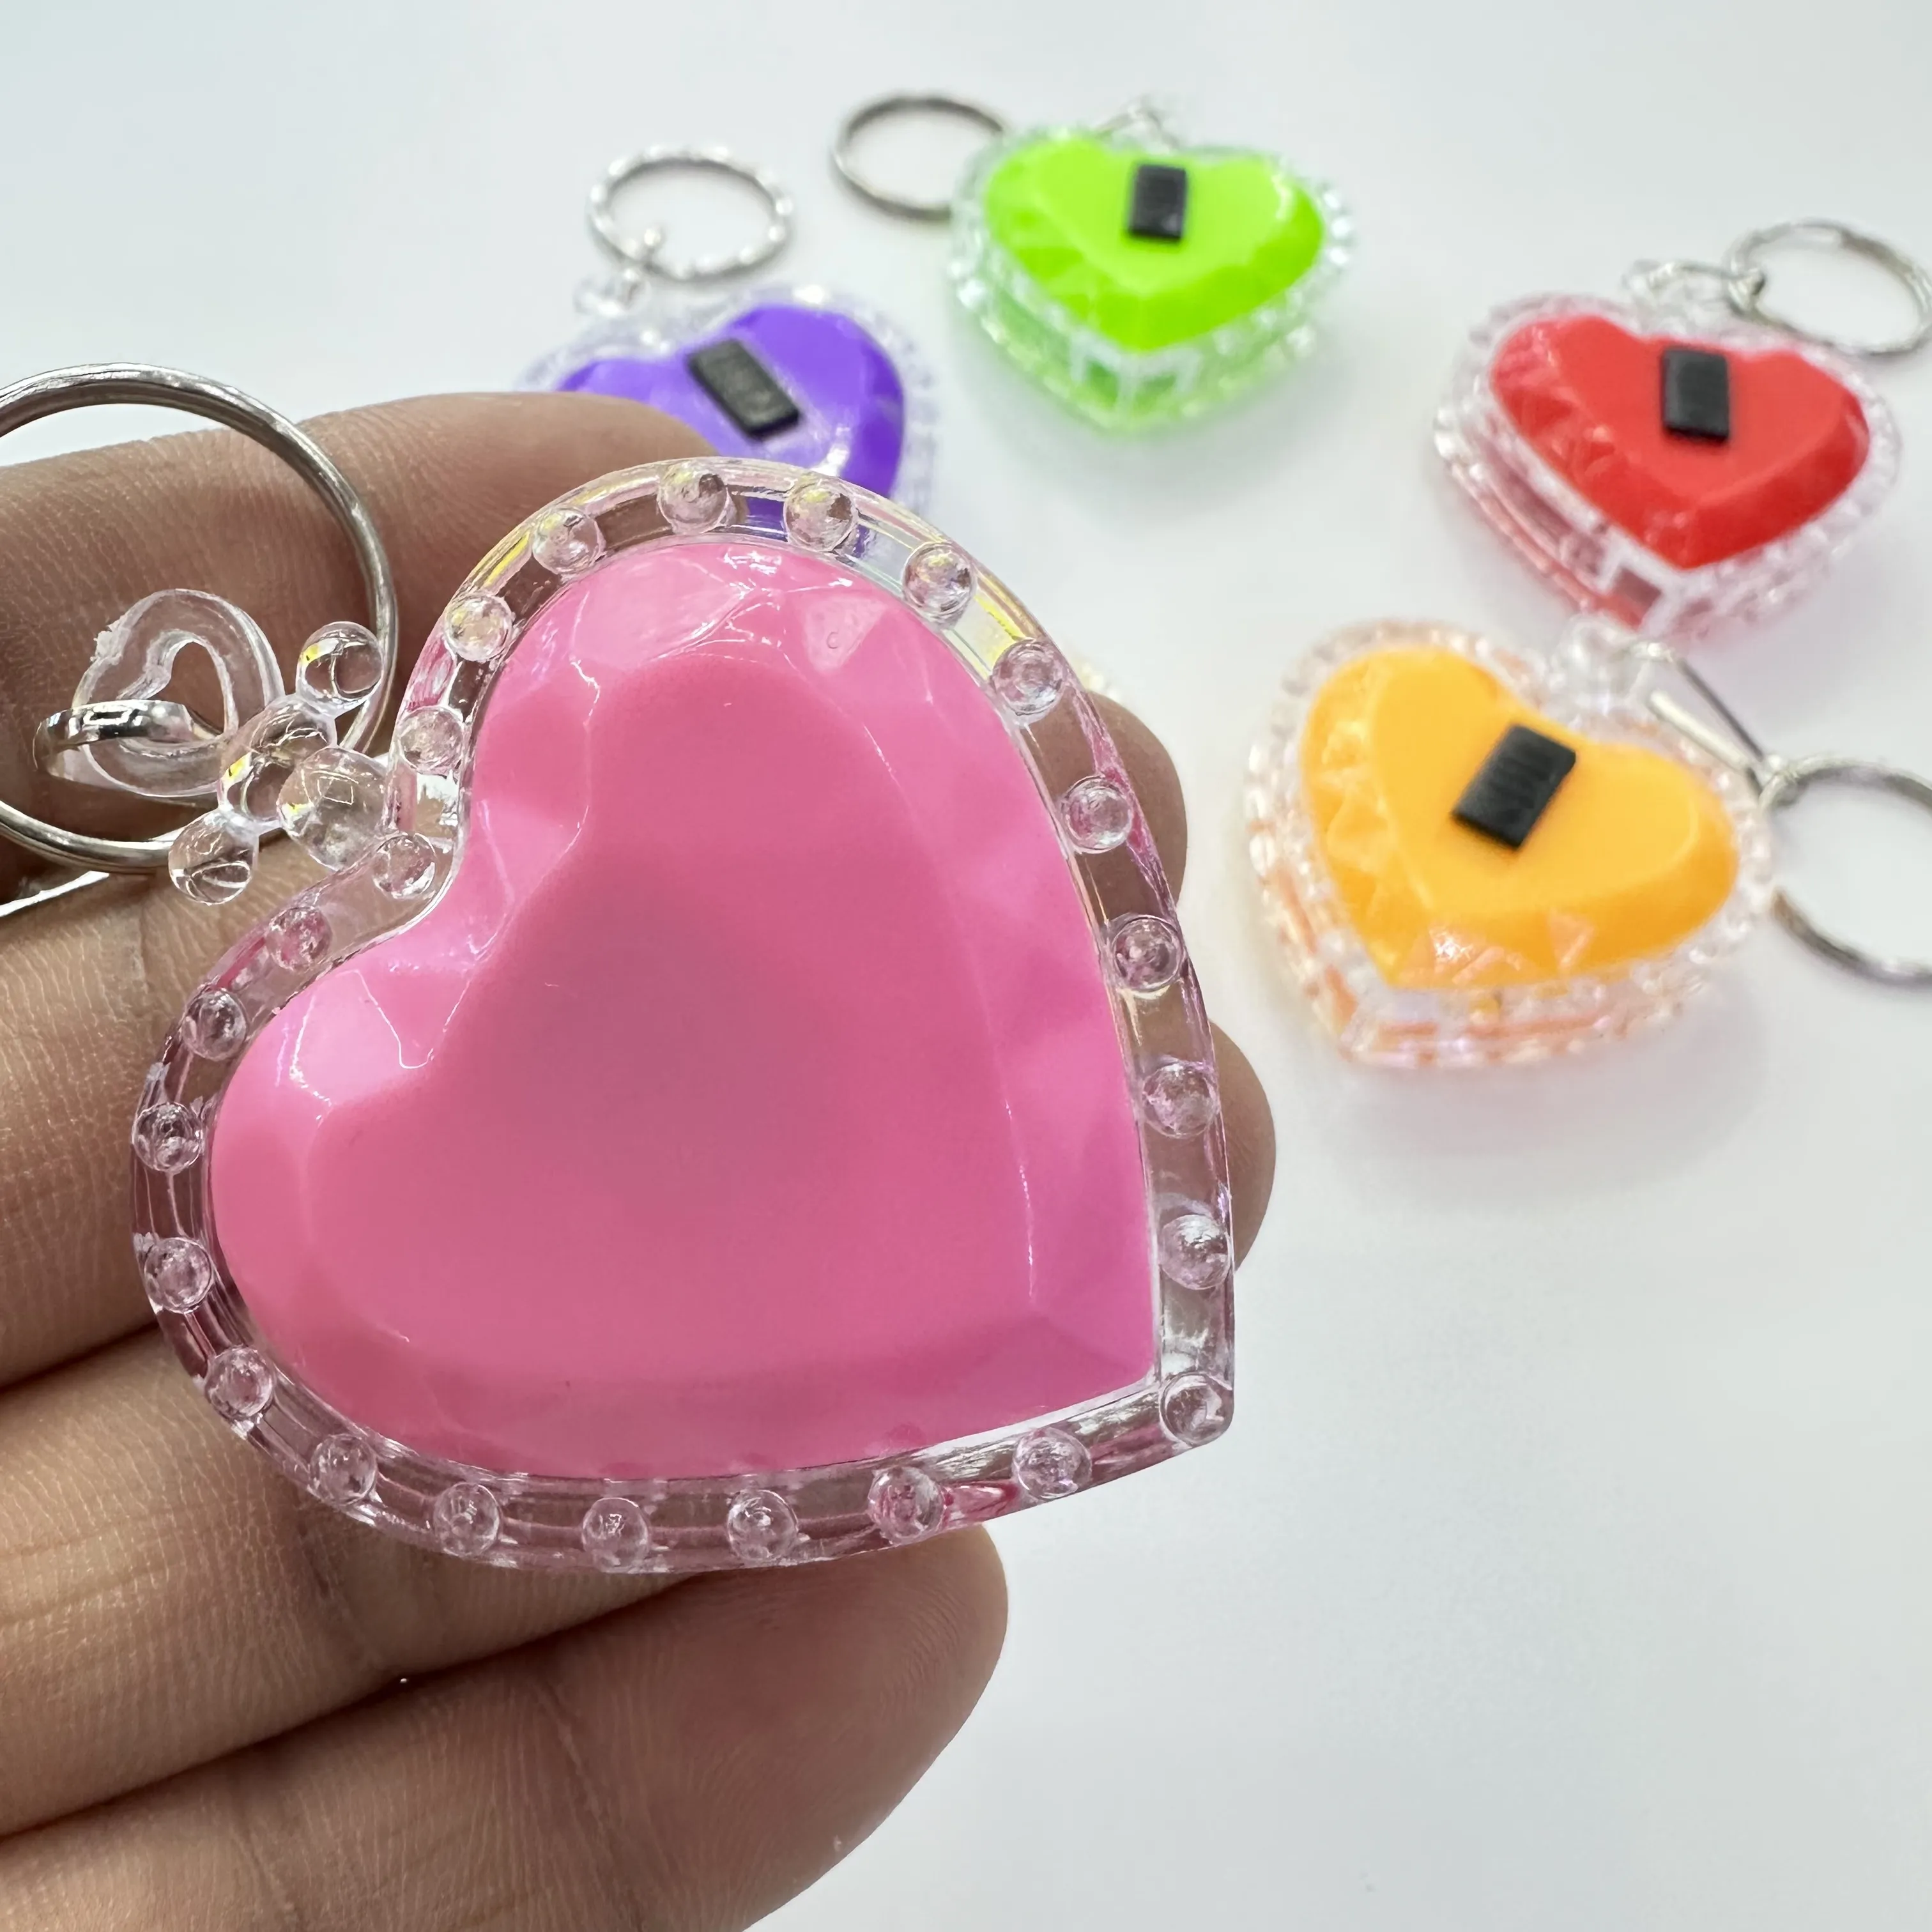 Оптовая продажа, популярный многофункциональный дешевый игрушечный светодиодный брелок в форме сердца, замок, аварийное освещение, светодиодные брелки